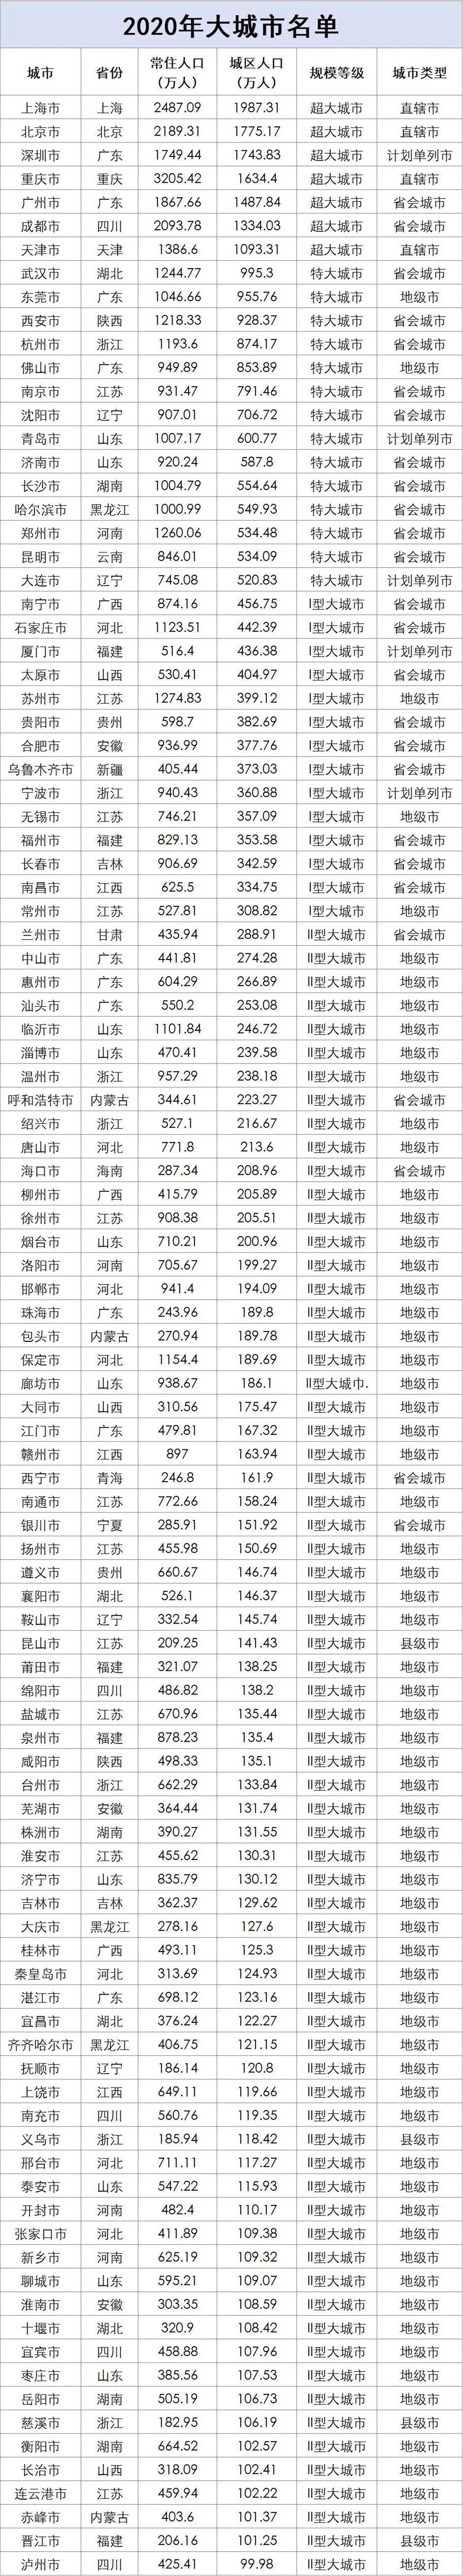 中國各城市人口數量排名最新數據圖表，中國百座大城市名單排名特大城市武漢有望成為超大城市(圖1)